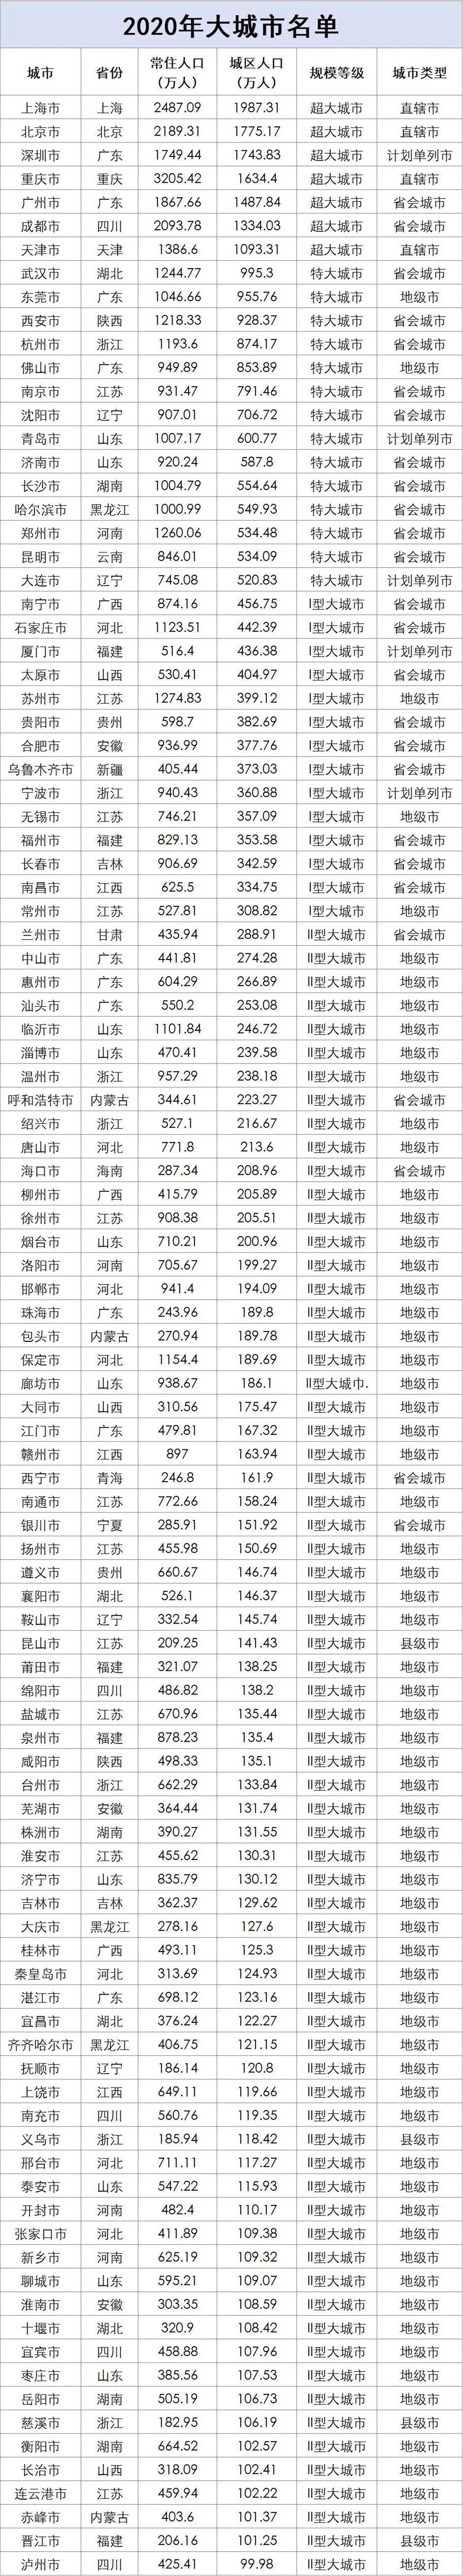 中國各城市人口數量排名最新數據圖表，中國百座大城市名單排名特大城市武漢有望成為超大城市(圖1)